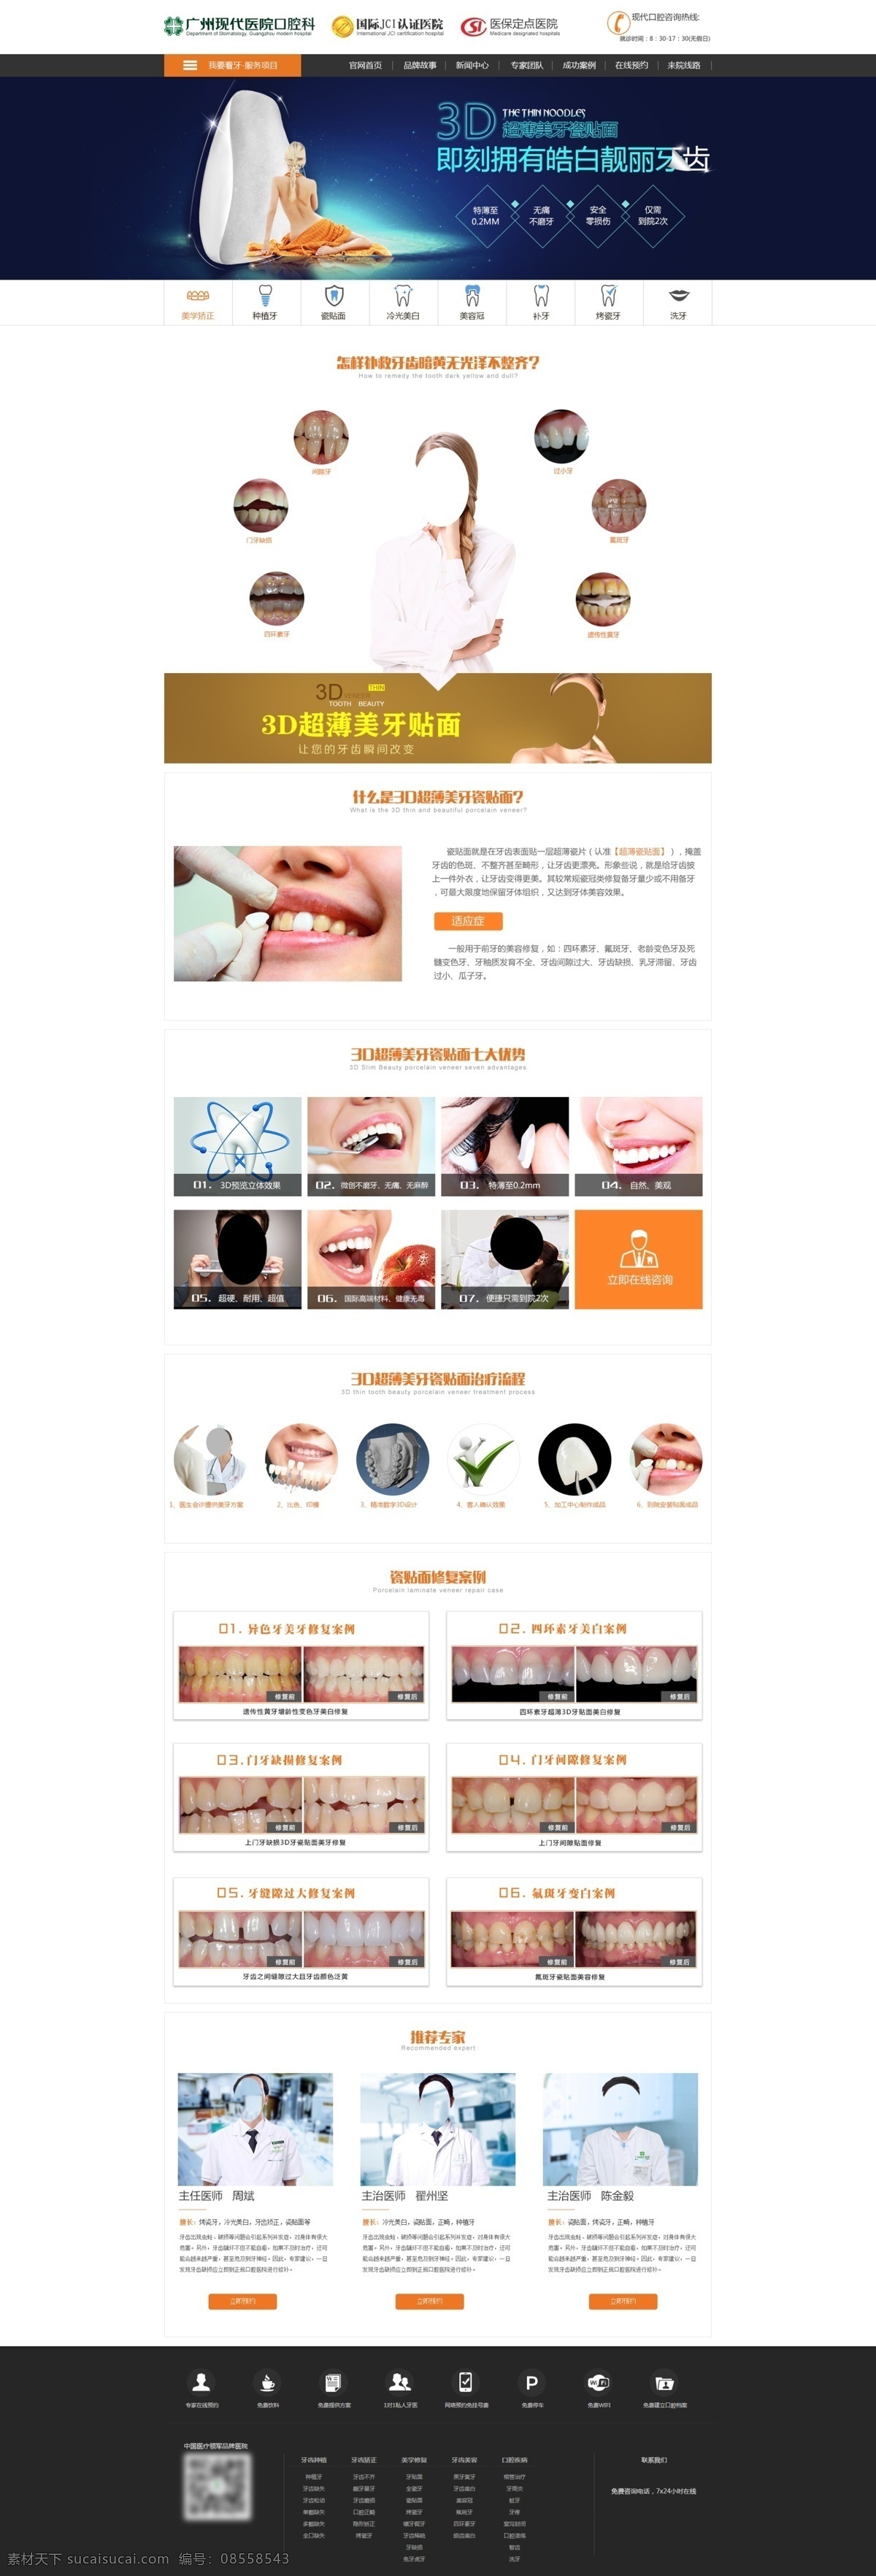 瓷贴面页面 口腔科 医疗 健康 牙科 瓷贴面 牙齿美白 web 界面设计 中文模板